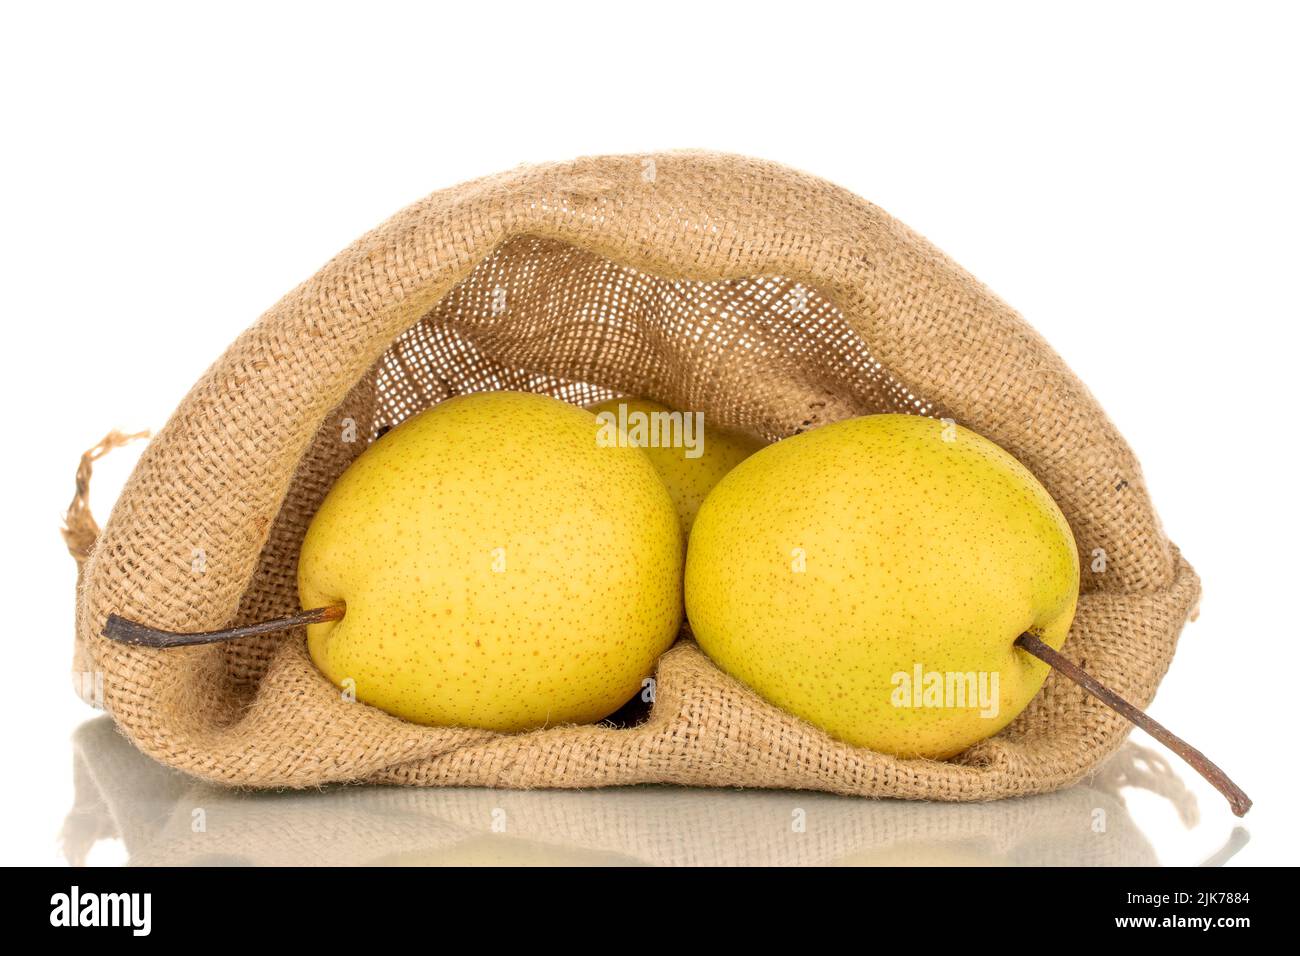 Deux poires bio jaune vif dans un sac de jute, en gros plan, isolées sur un fond blanc. Banque D'Images